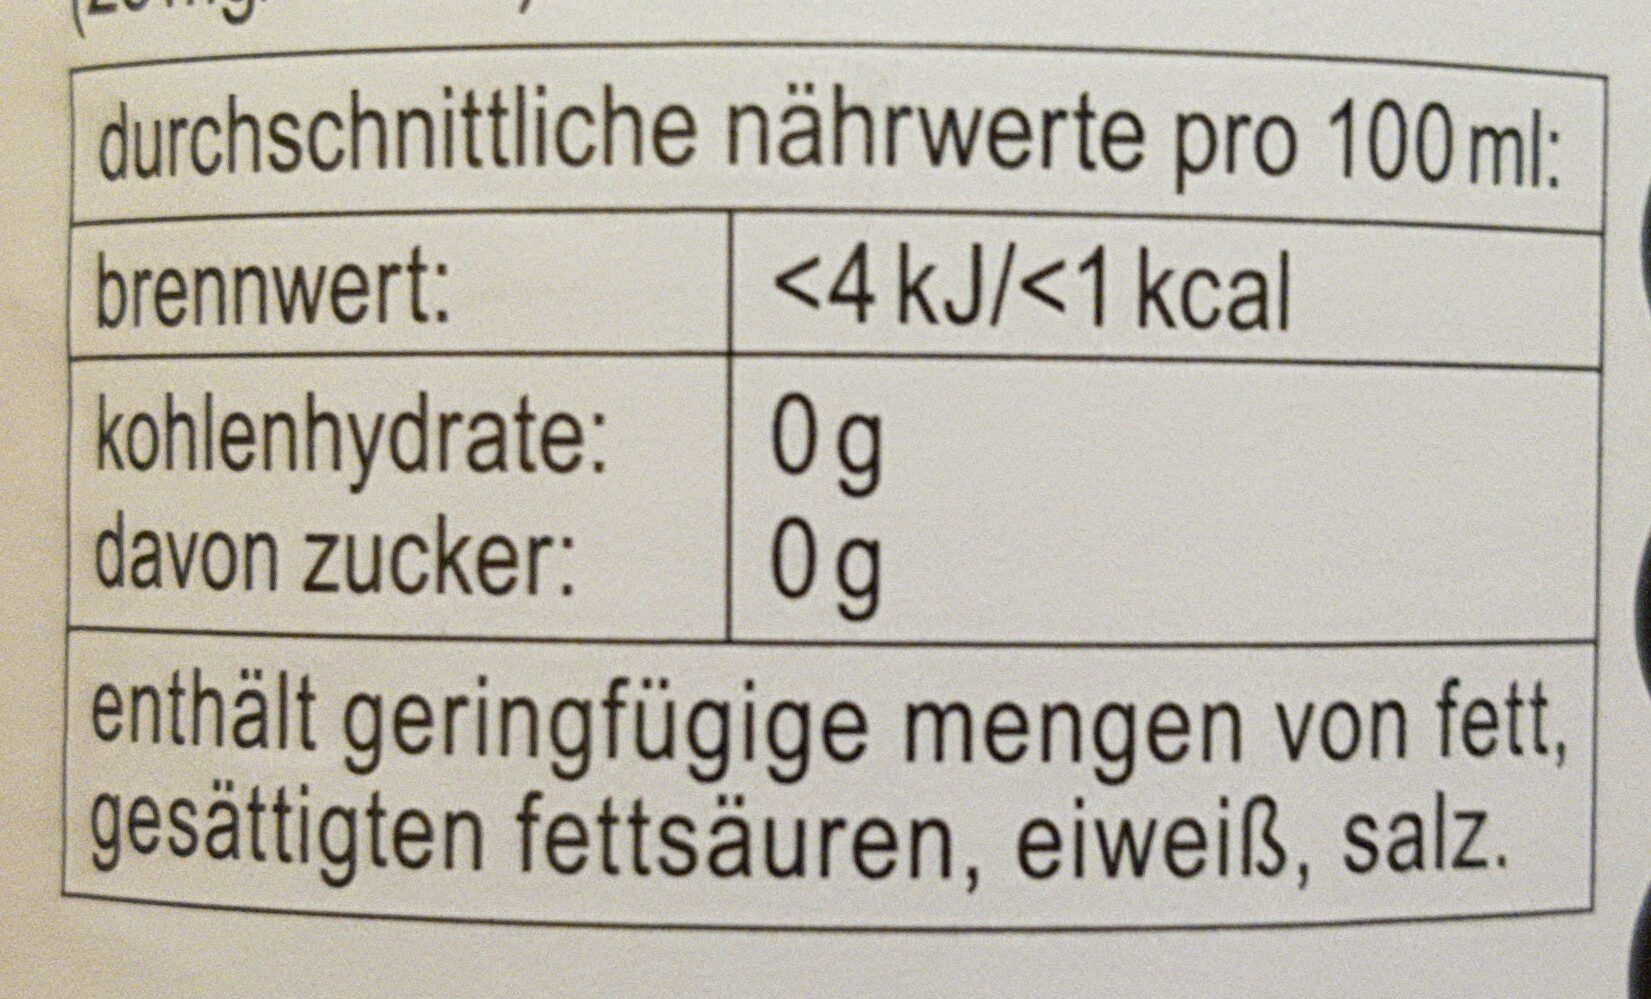 Fritz-kola sans sucre - Voedingswaarden - fr